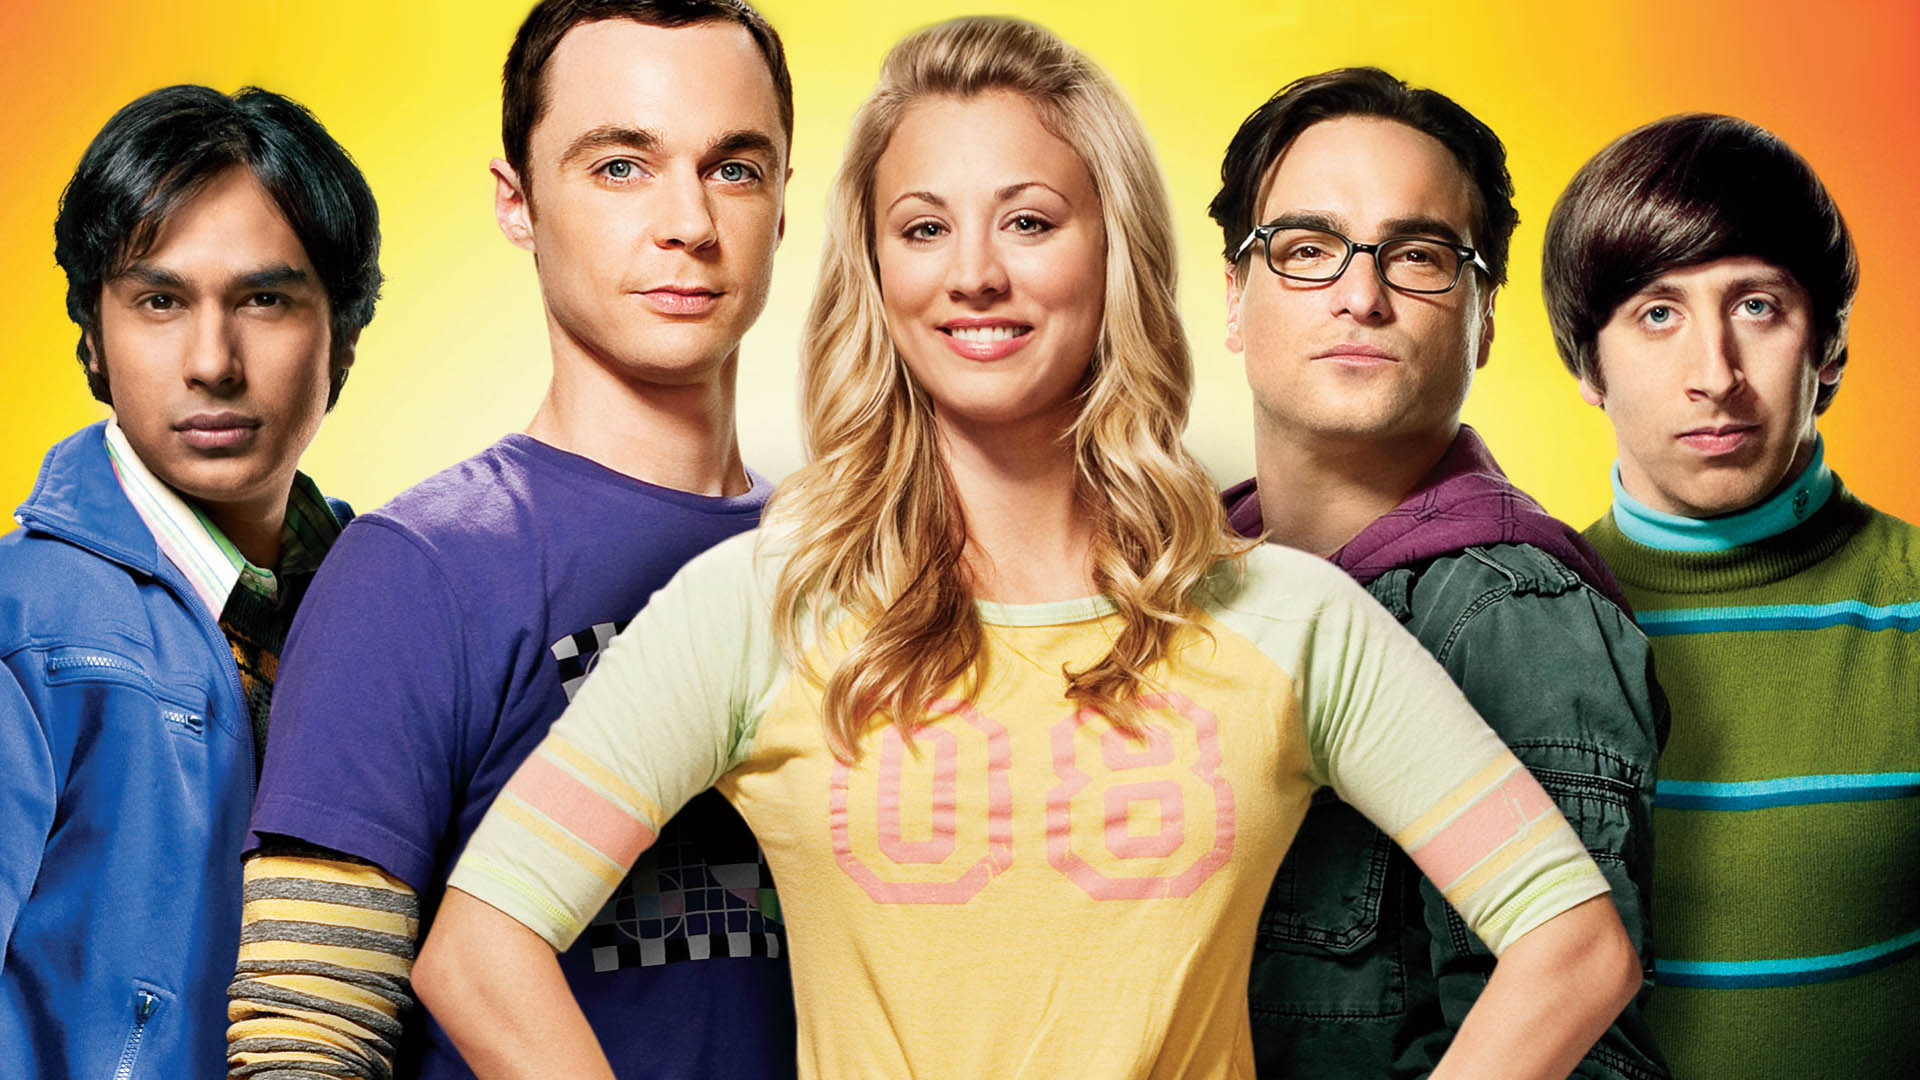 The Big Bang Theory #2